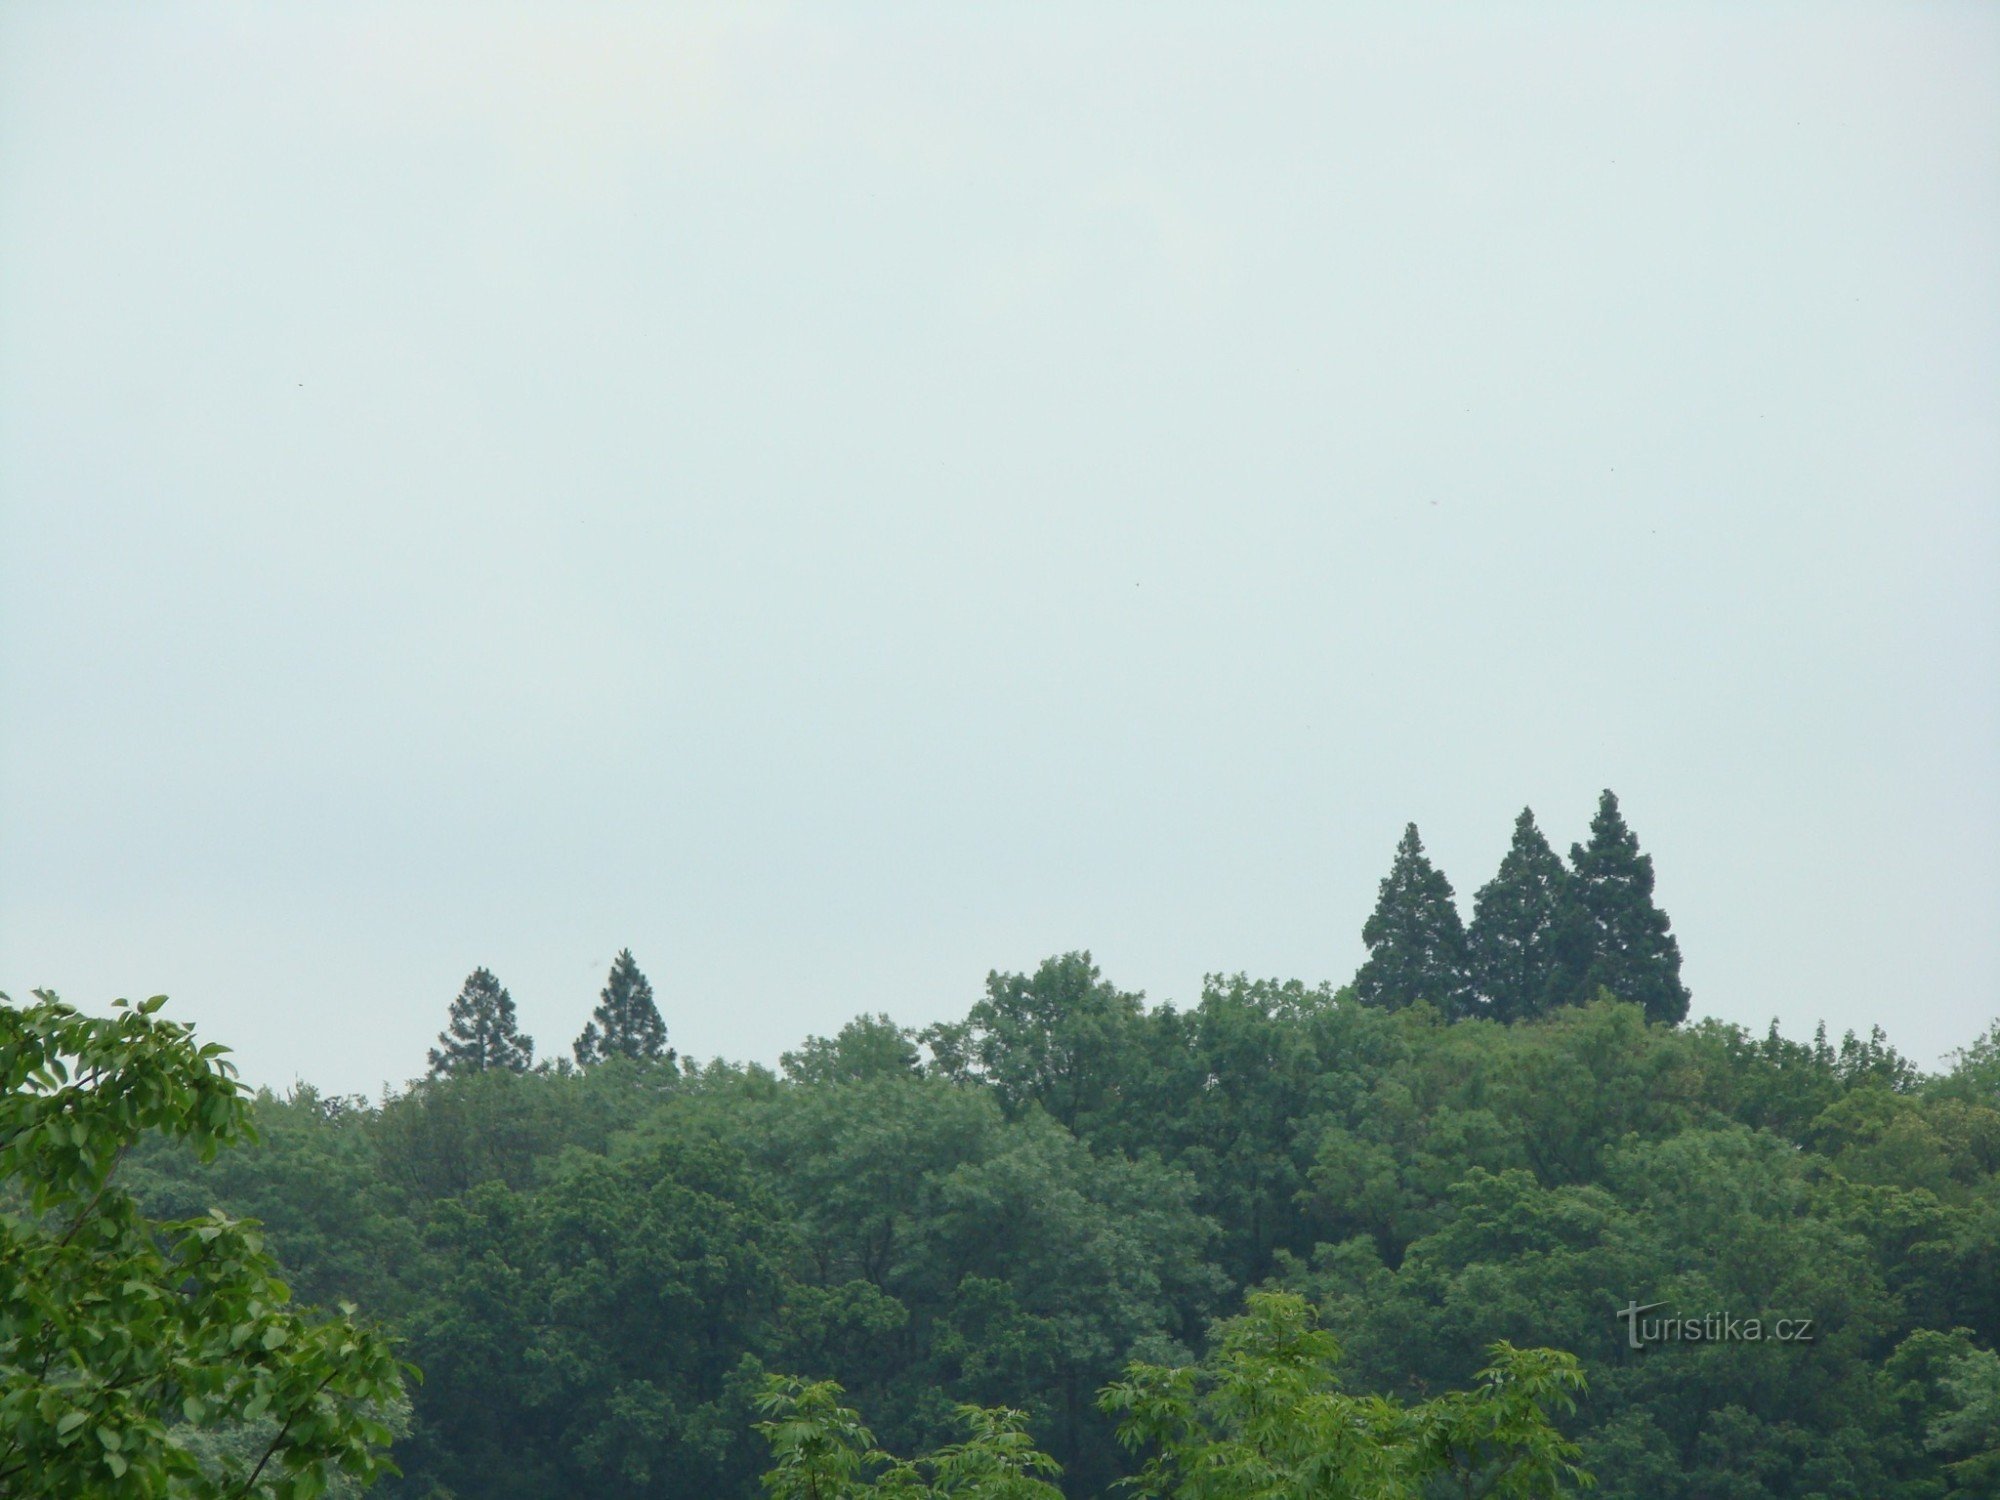 Ratměřice 的巨型红杉树。 它们比城堡公园里的其他树木高得多。